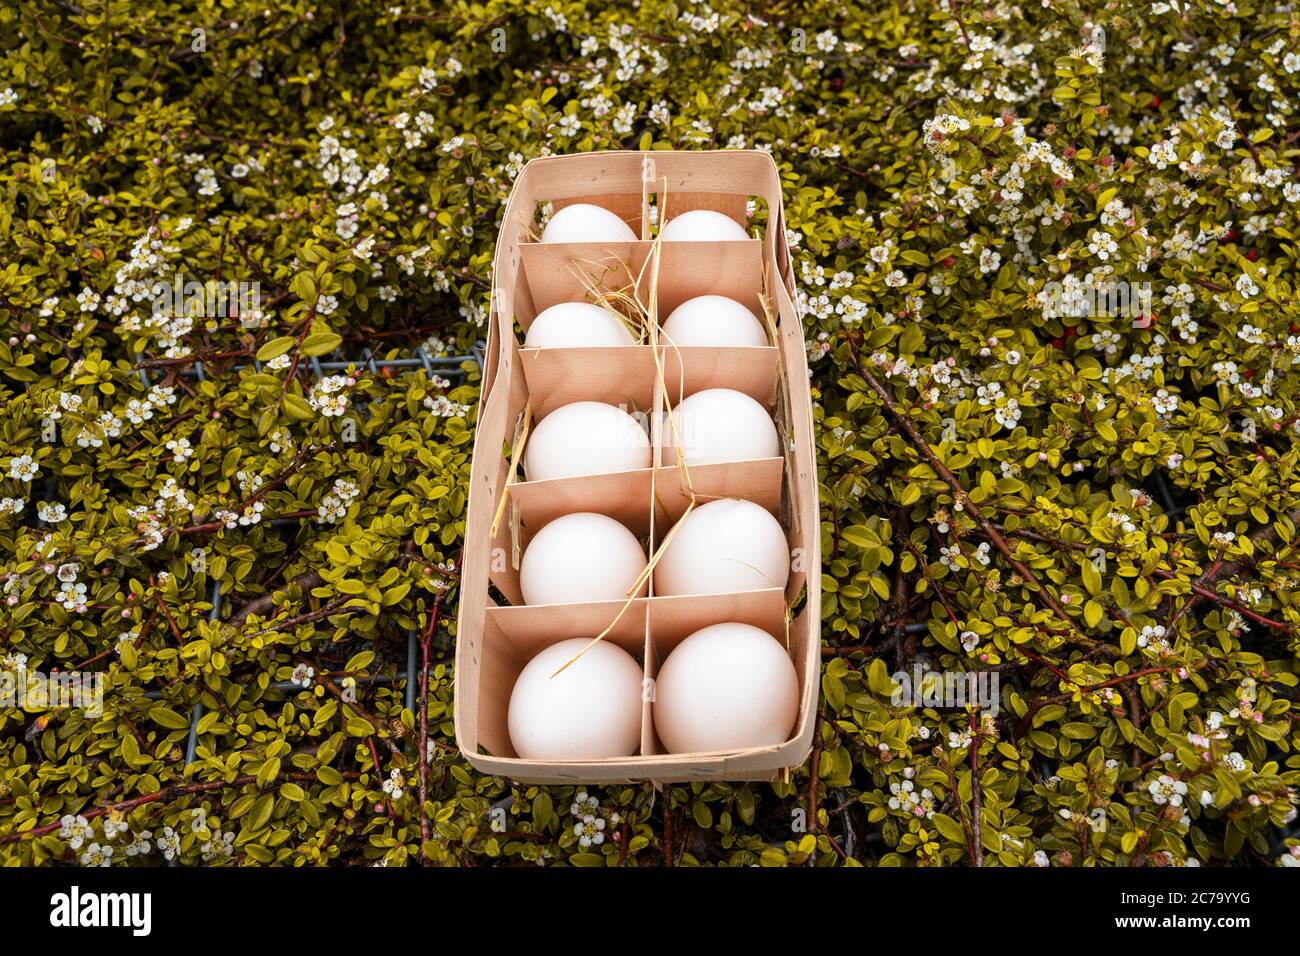 Huevos frescos rústicos en contenedor de madera en la tierra de tierra de la aldea de la naturaleza con césped verde, vista lateral. Los huevos se espolvorean con hierba seca Foto de stock